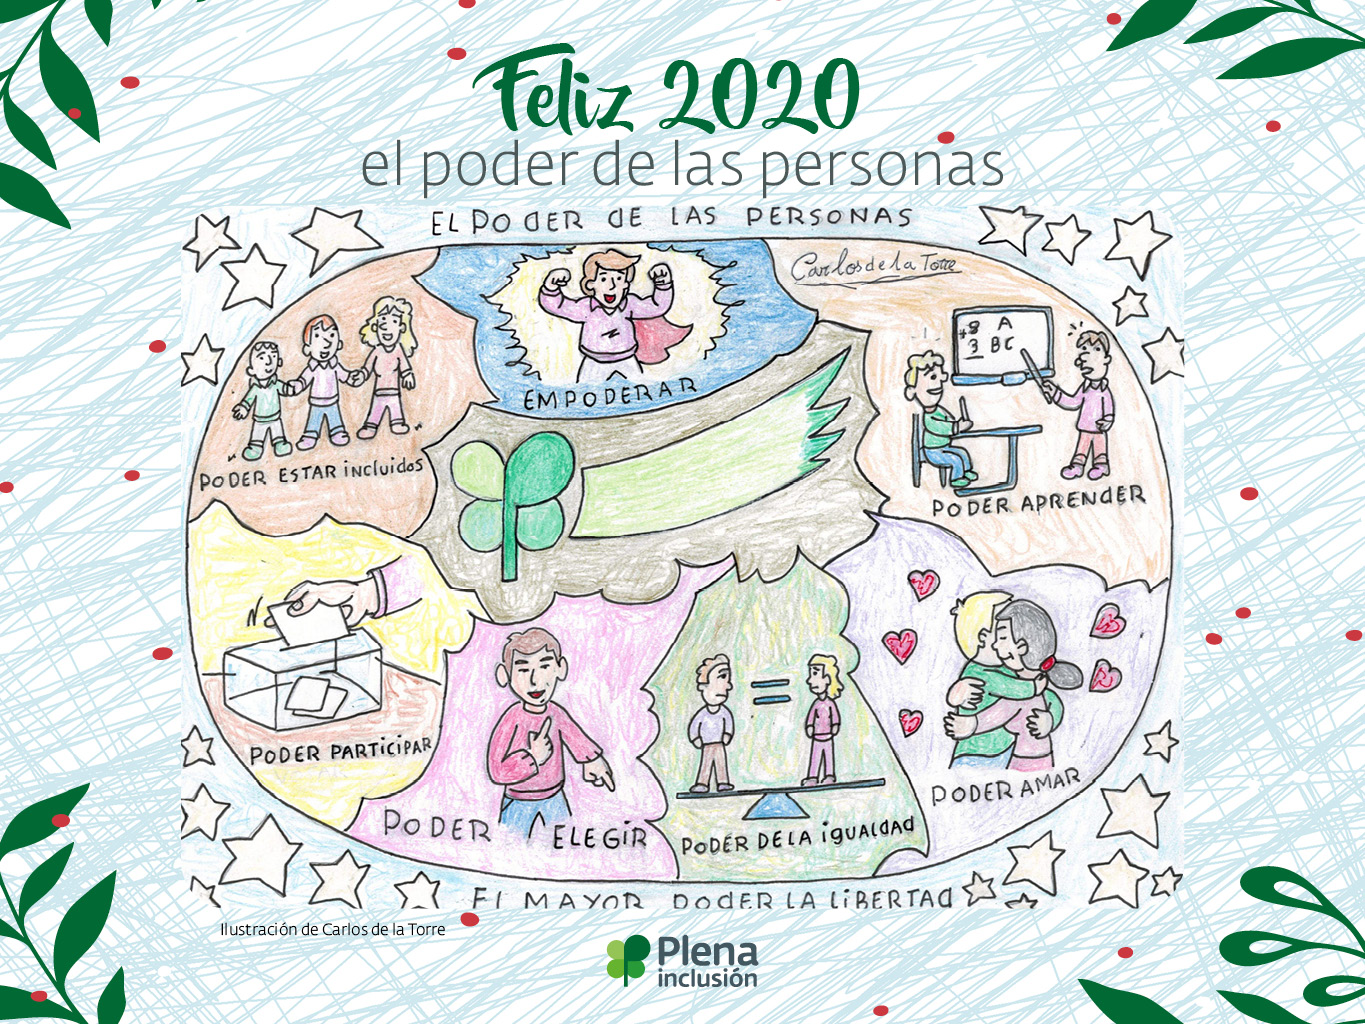 El 2020 se dibuja con “El poder de las personas” - Plena inclusión